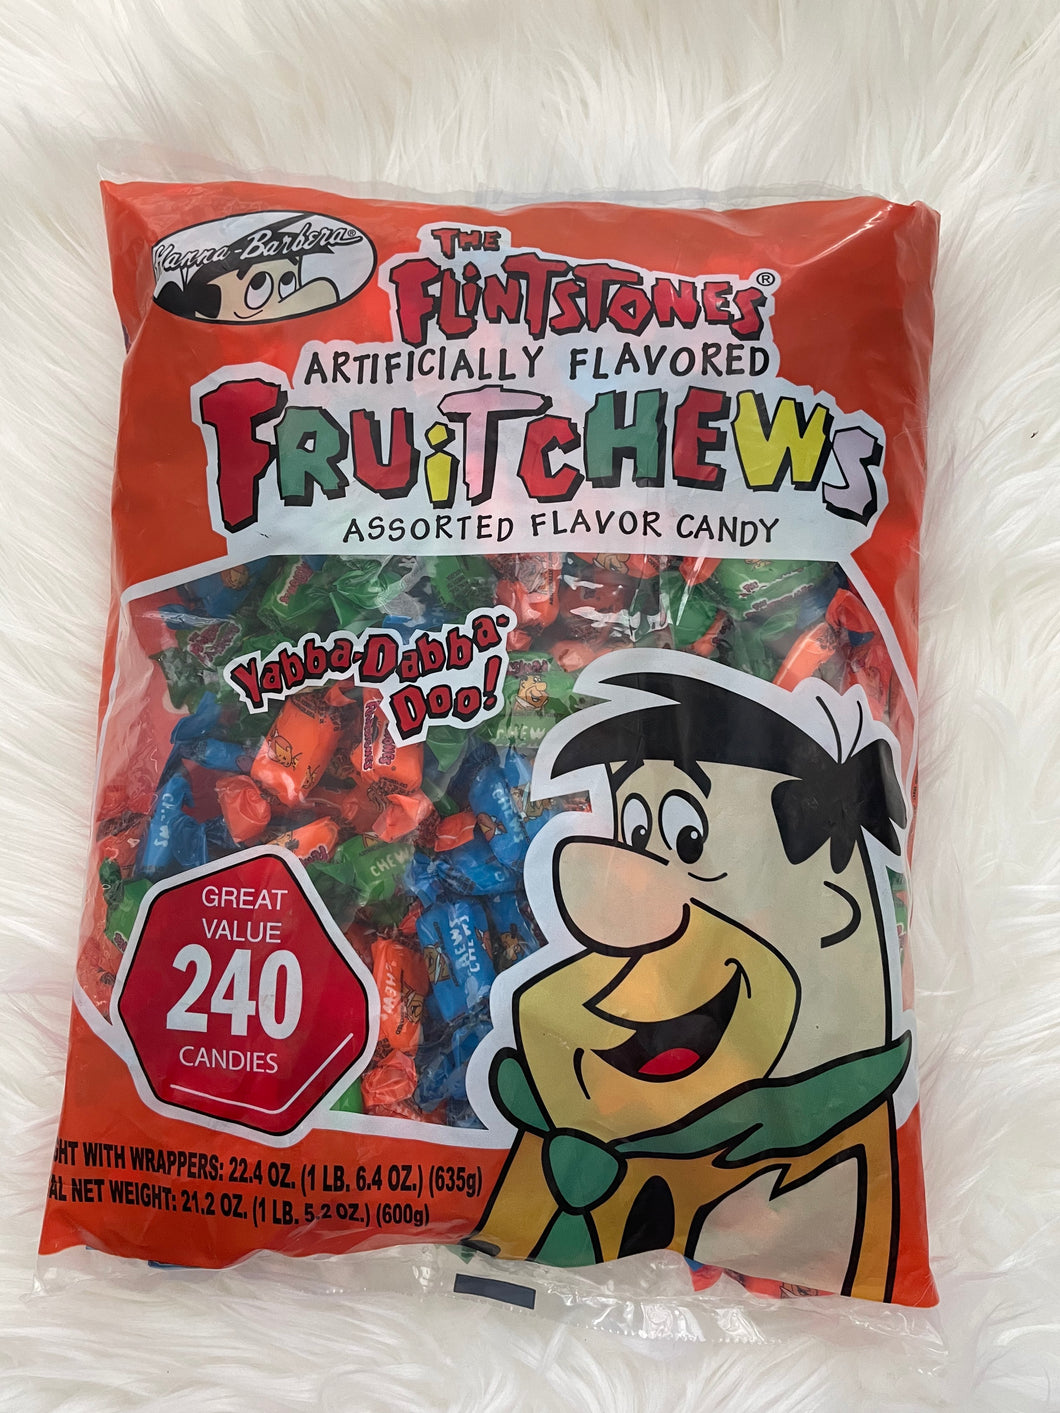 The Flintstones Fruit Chews